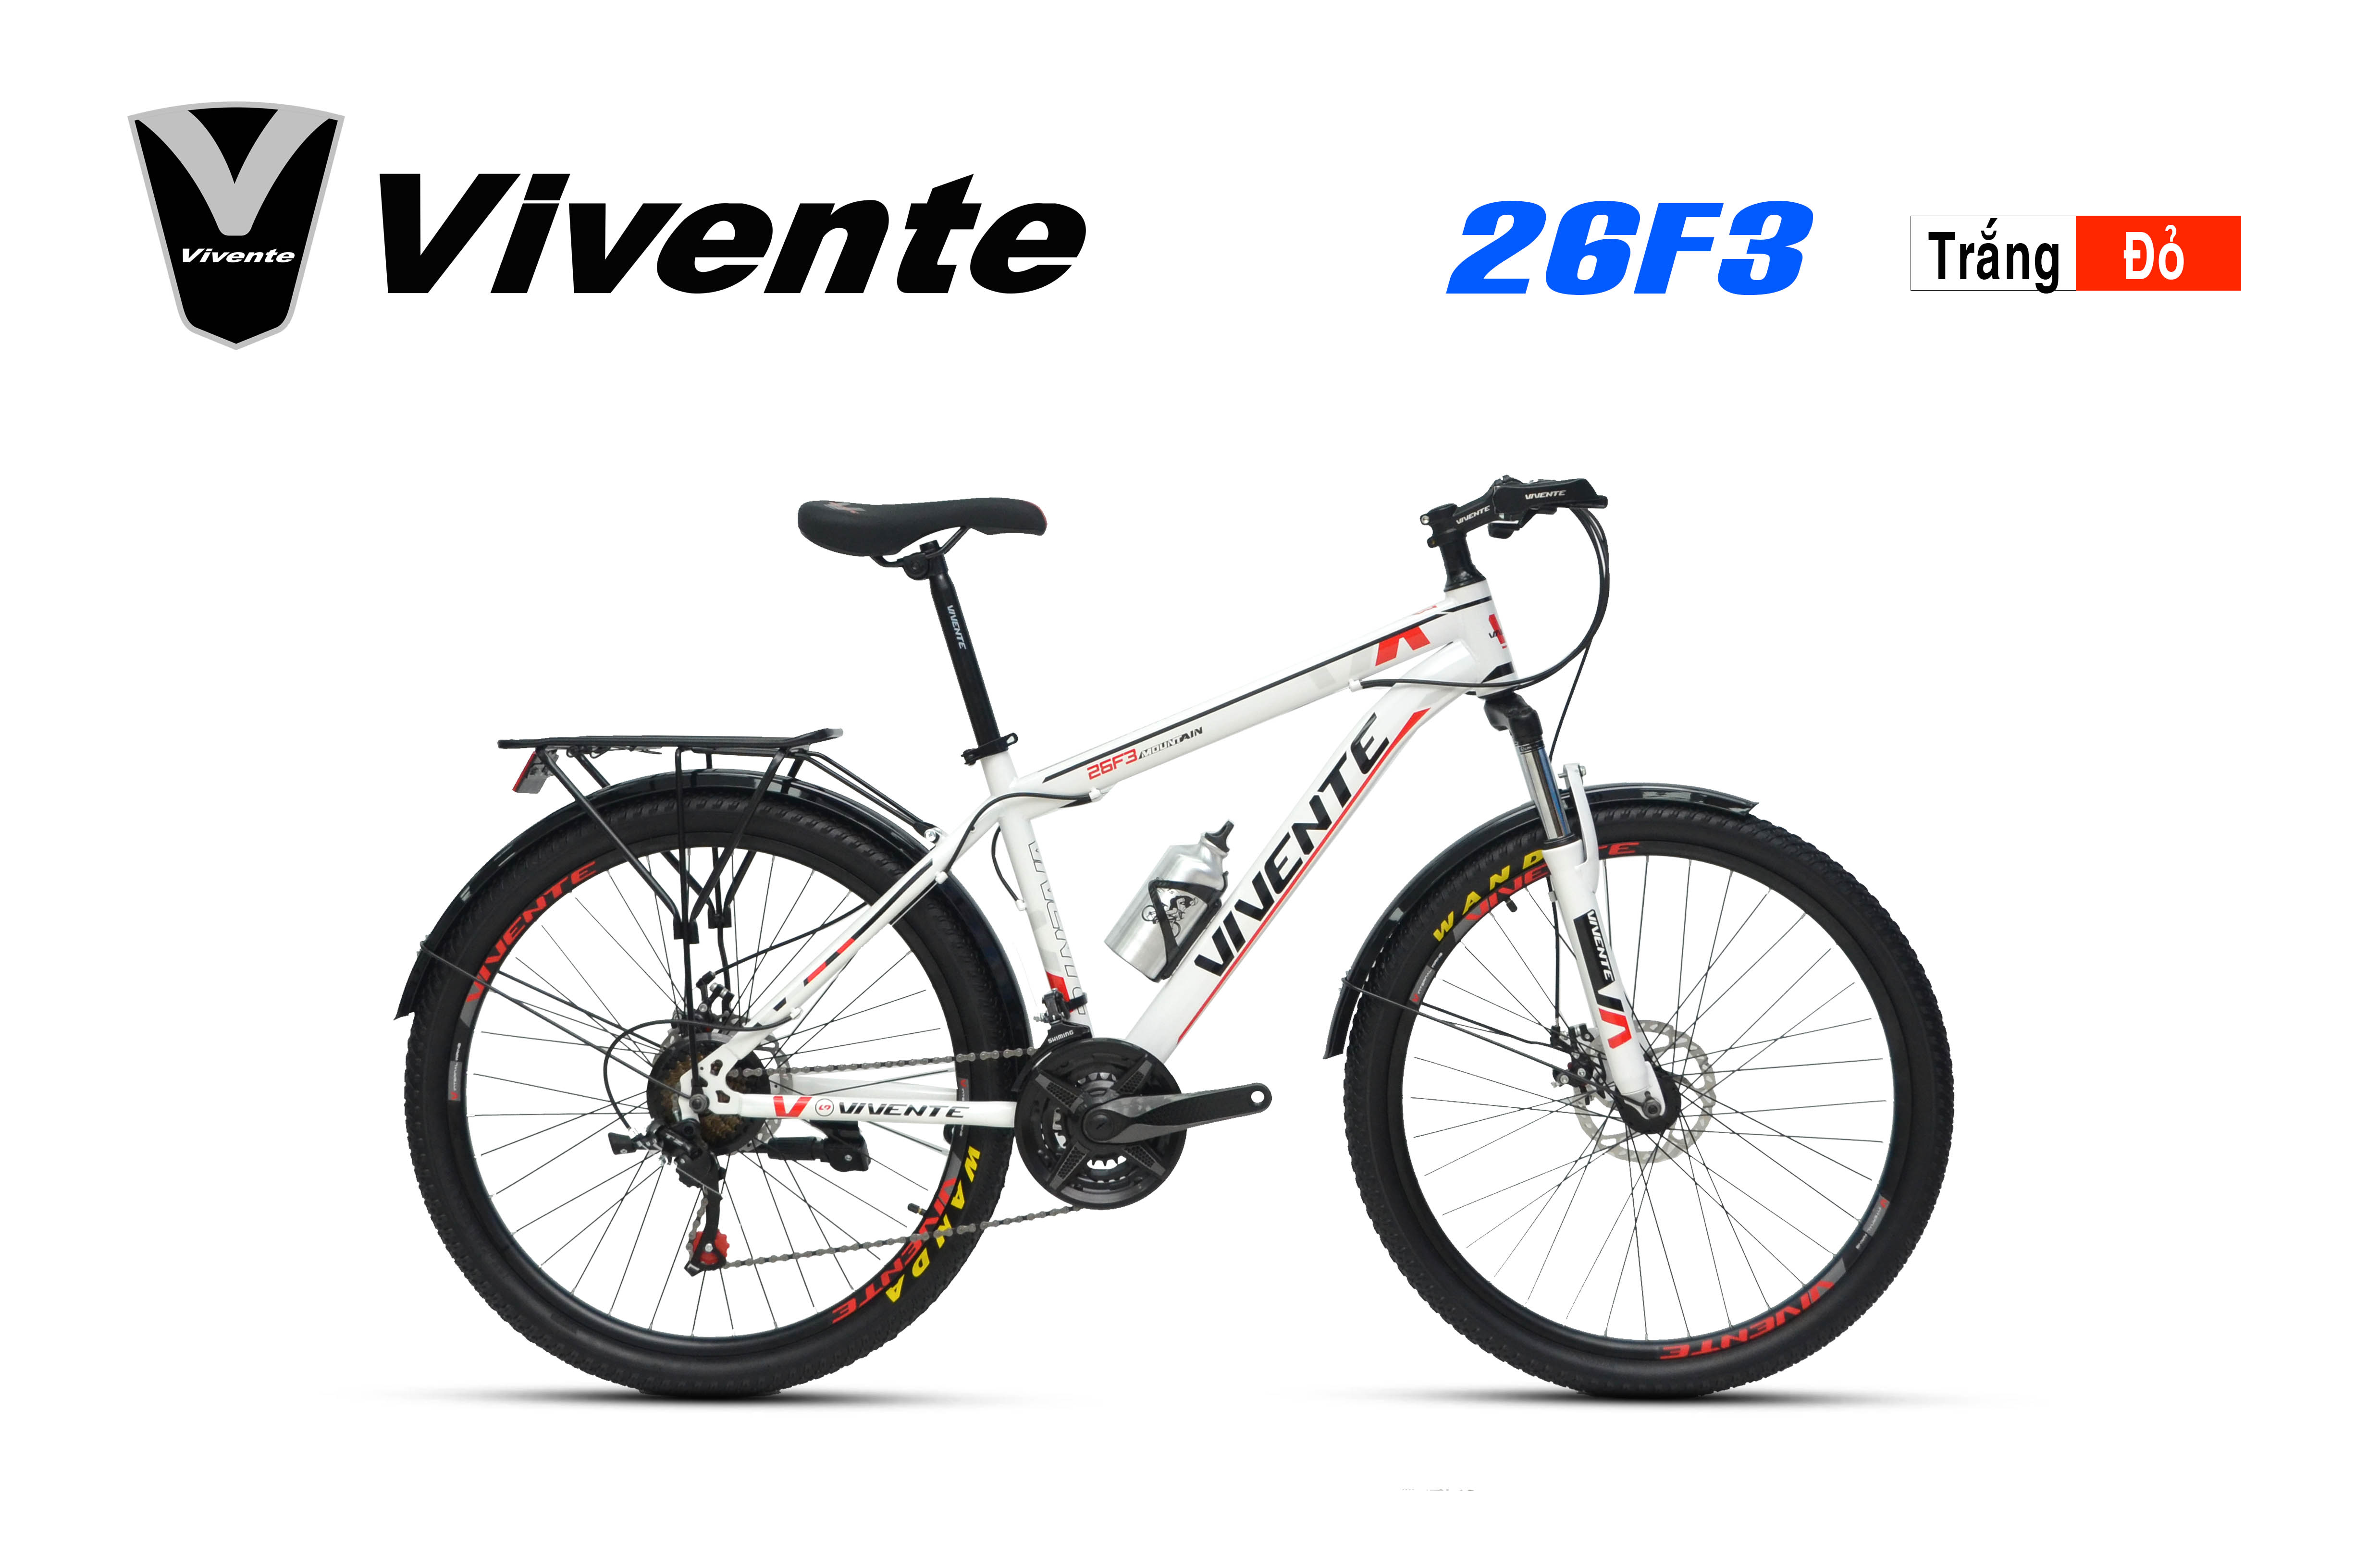 VIVENTE 26F3 - một chiếc xe đạp địa hình đầy cảm hứng và tiện nghi. Với bộ khung nhôm cao cấp, hệ thống phanh đĩa thủy lực, bộ truyền động Shimano 24 tốc độ và các phụ kiện tiện ích, chiếc xe đạp VIVENTE 26F3 sẽ đem đến cho bạn cảm giác an toàn, thoải mái và hứng khởi mỗi khi ra ngoài.